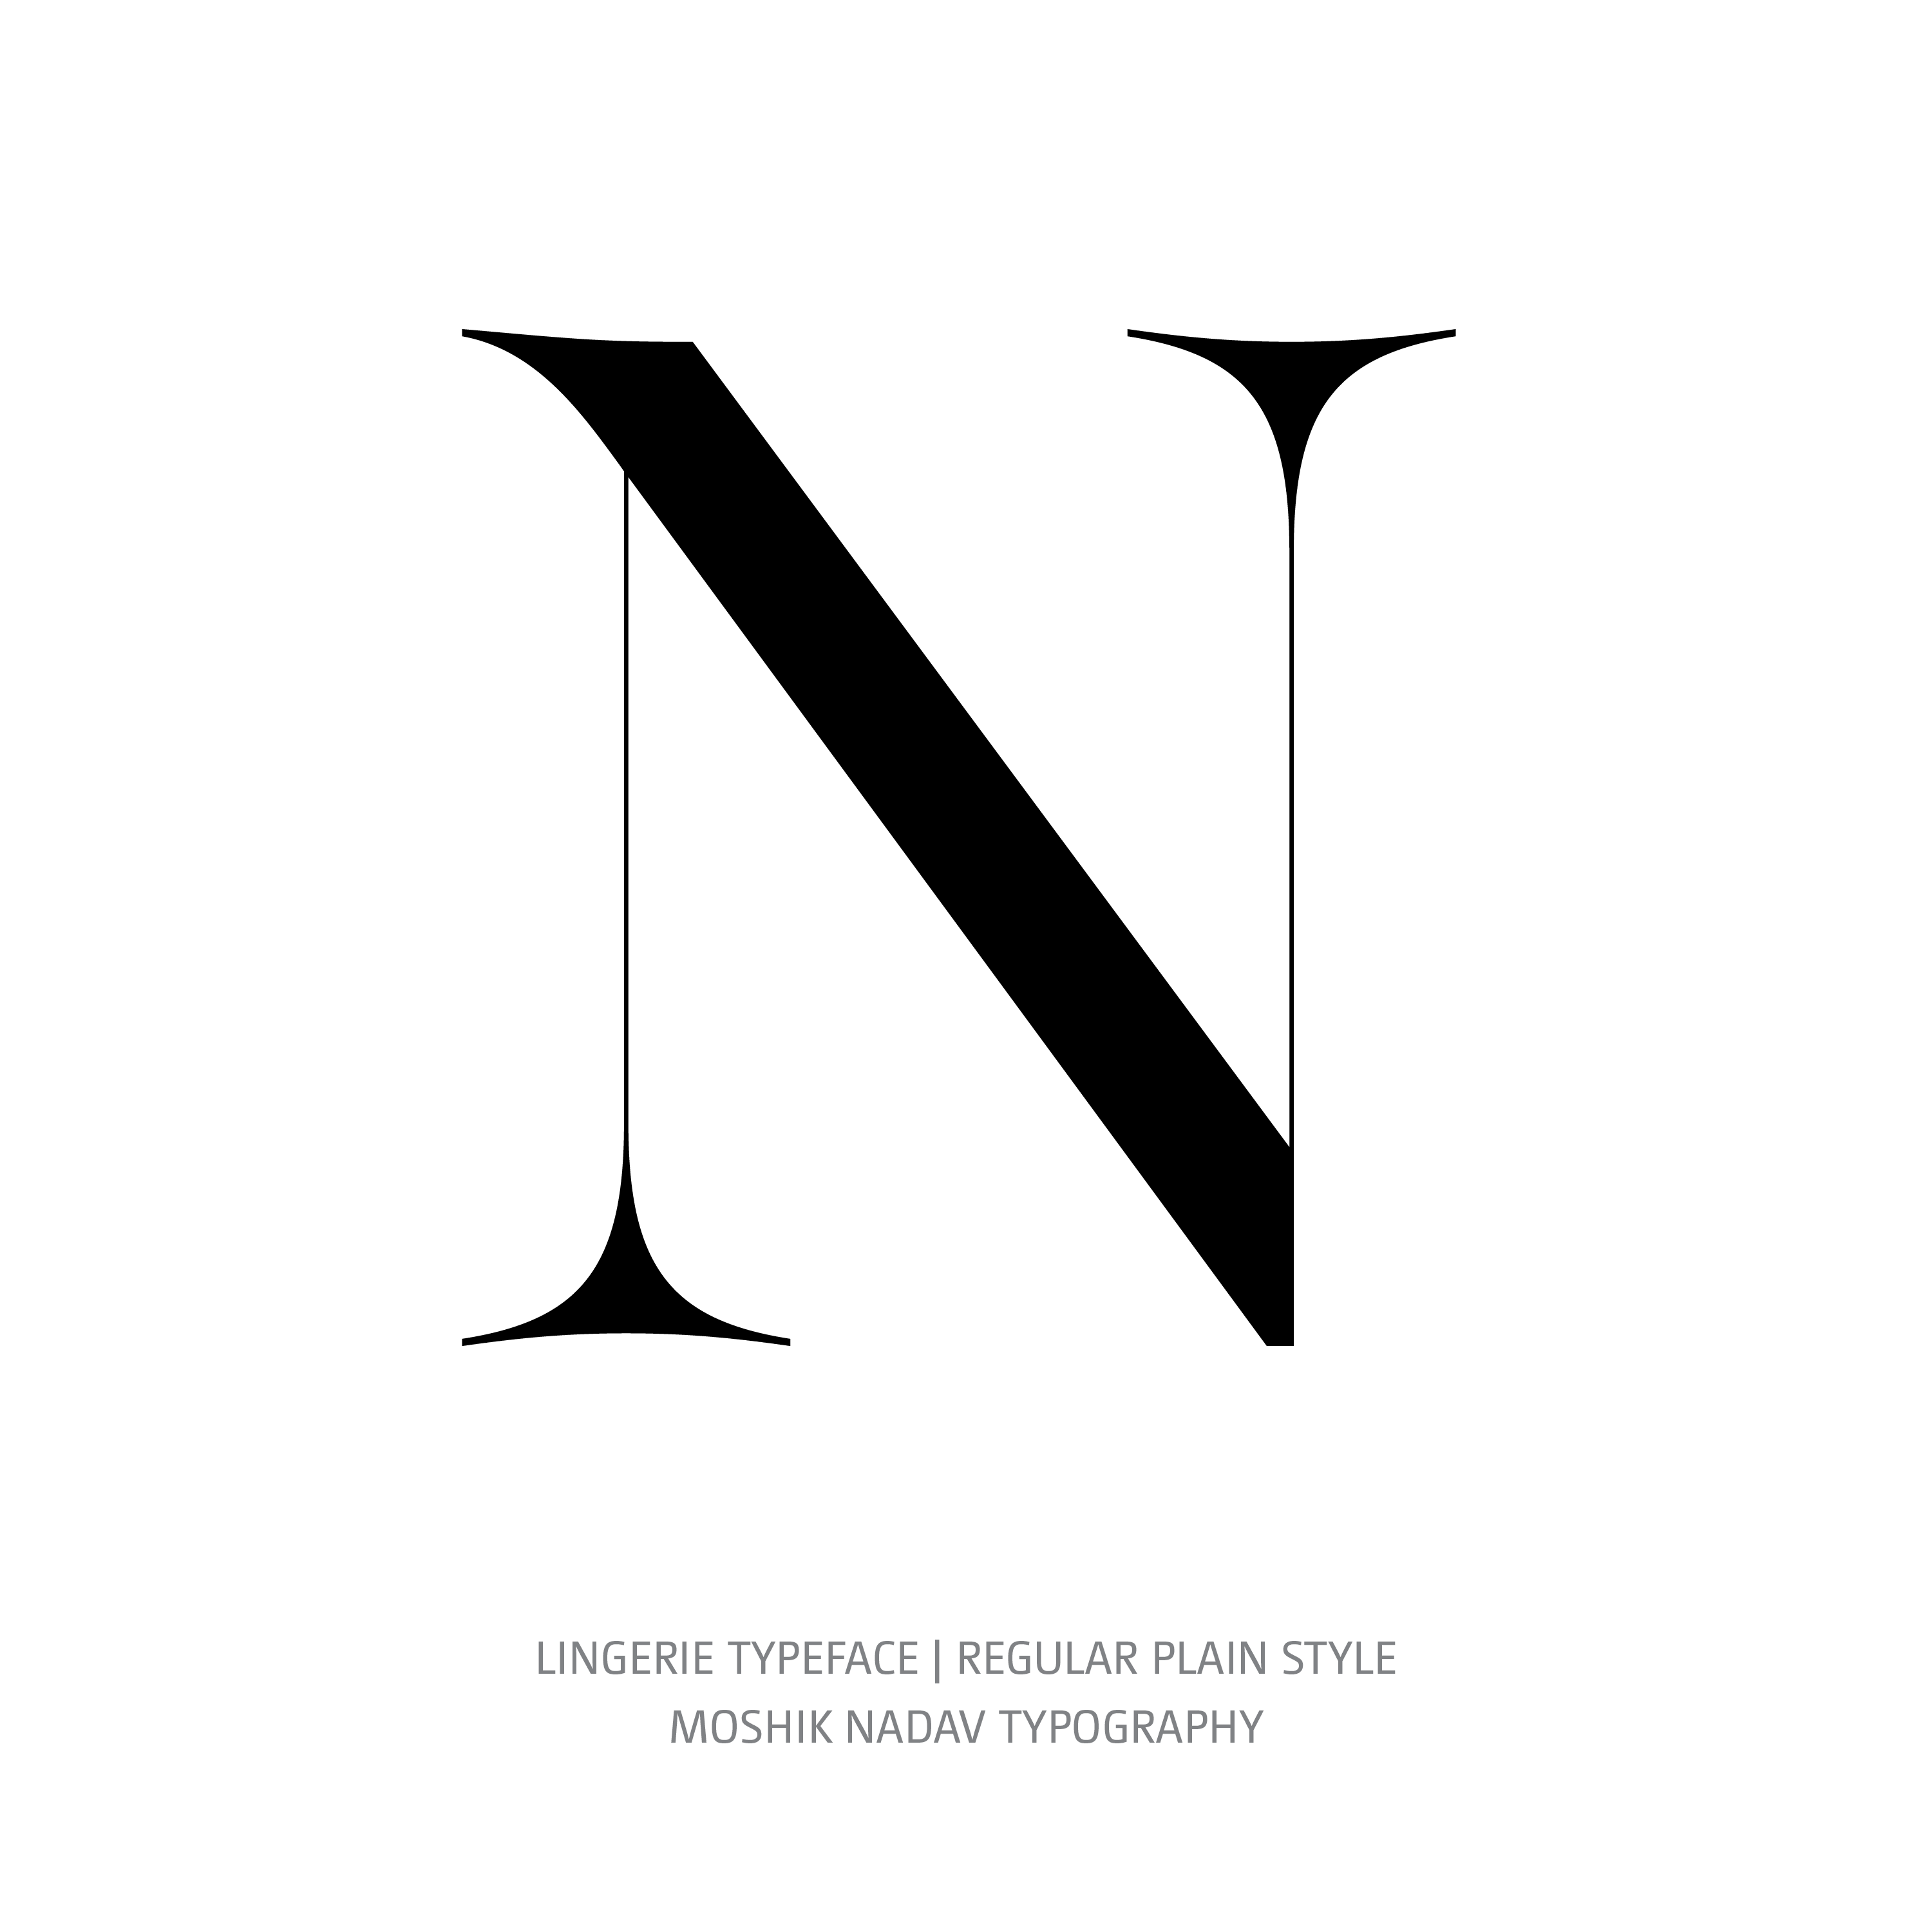 Lingerie Typeface Regular Plain N